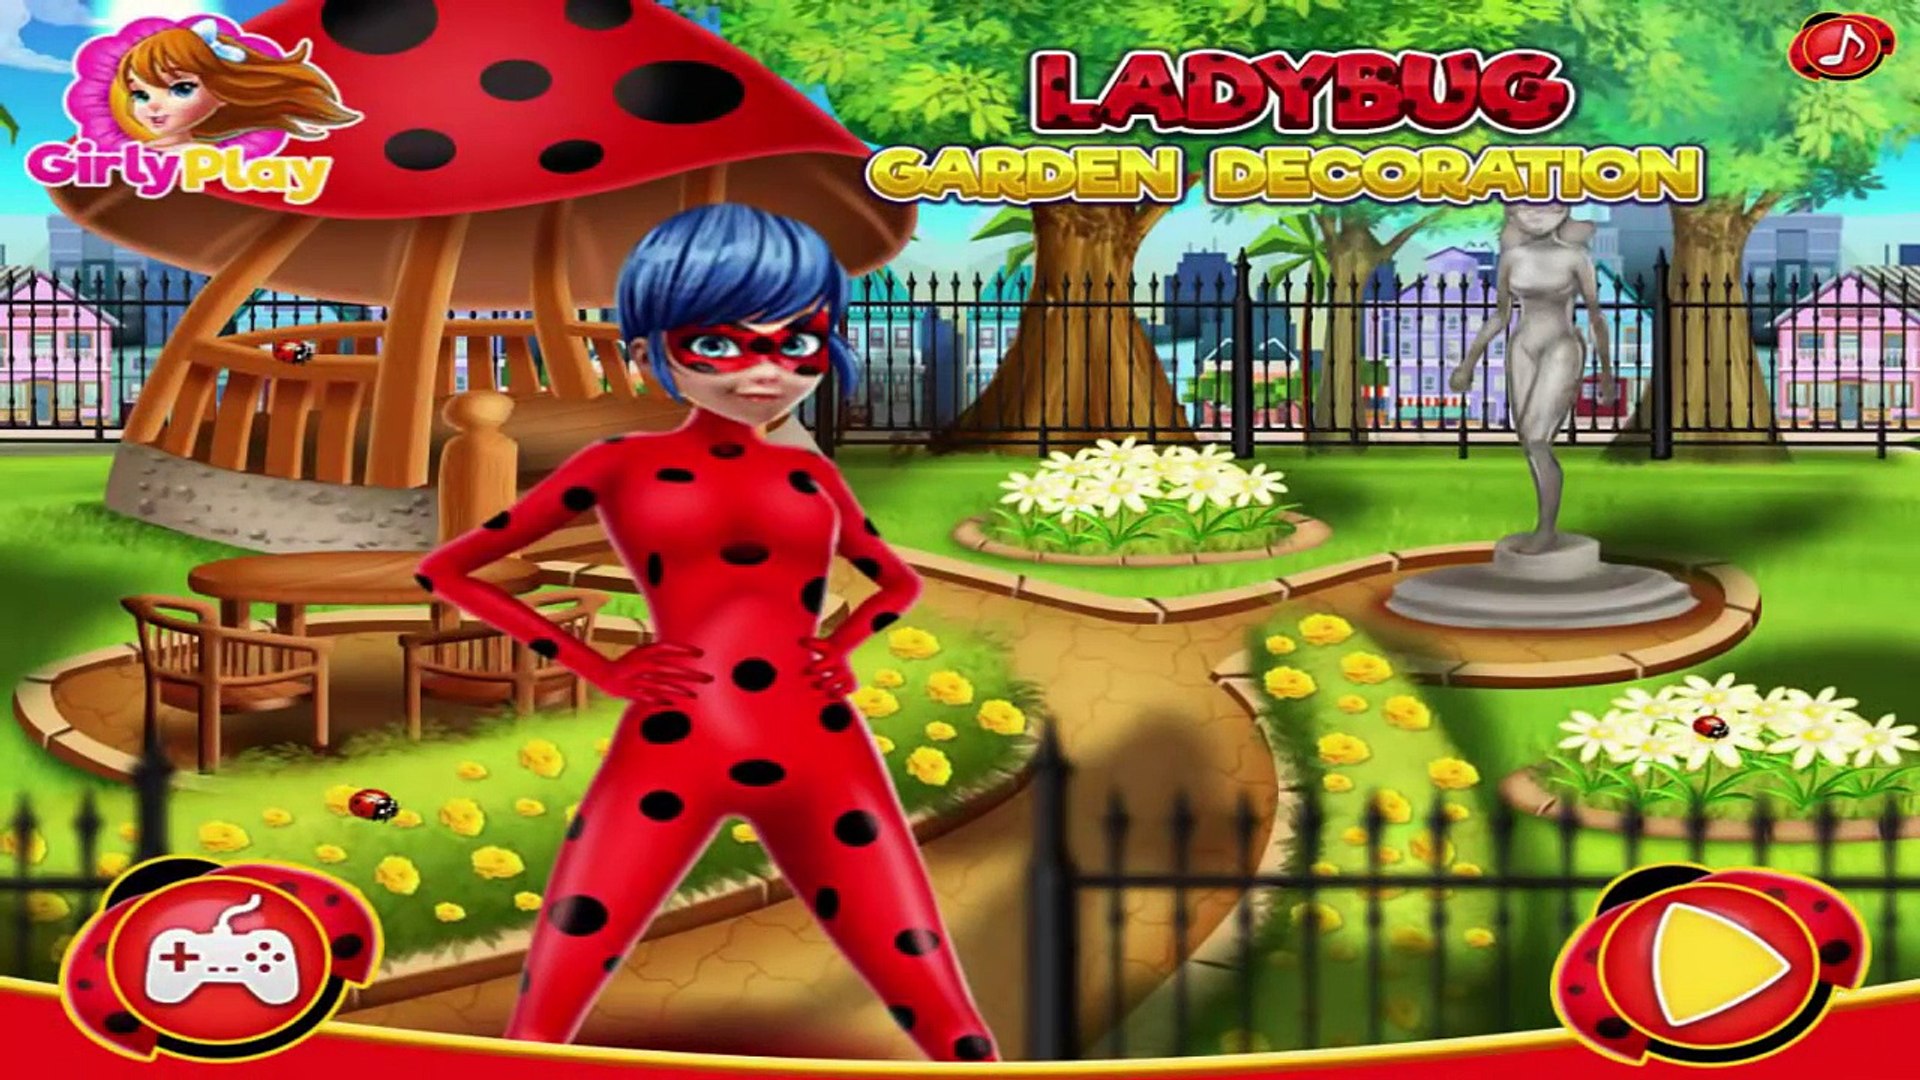 Ladybug Garden Decoration - Miraculous Ladybug